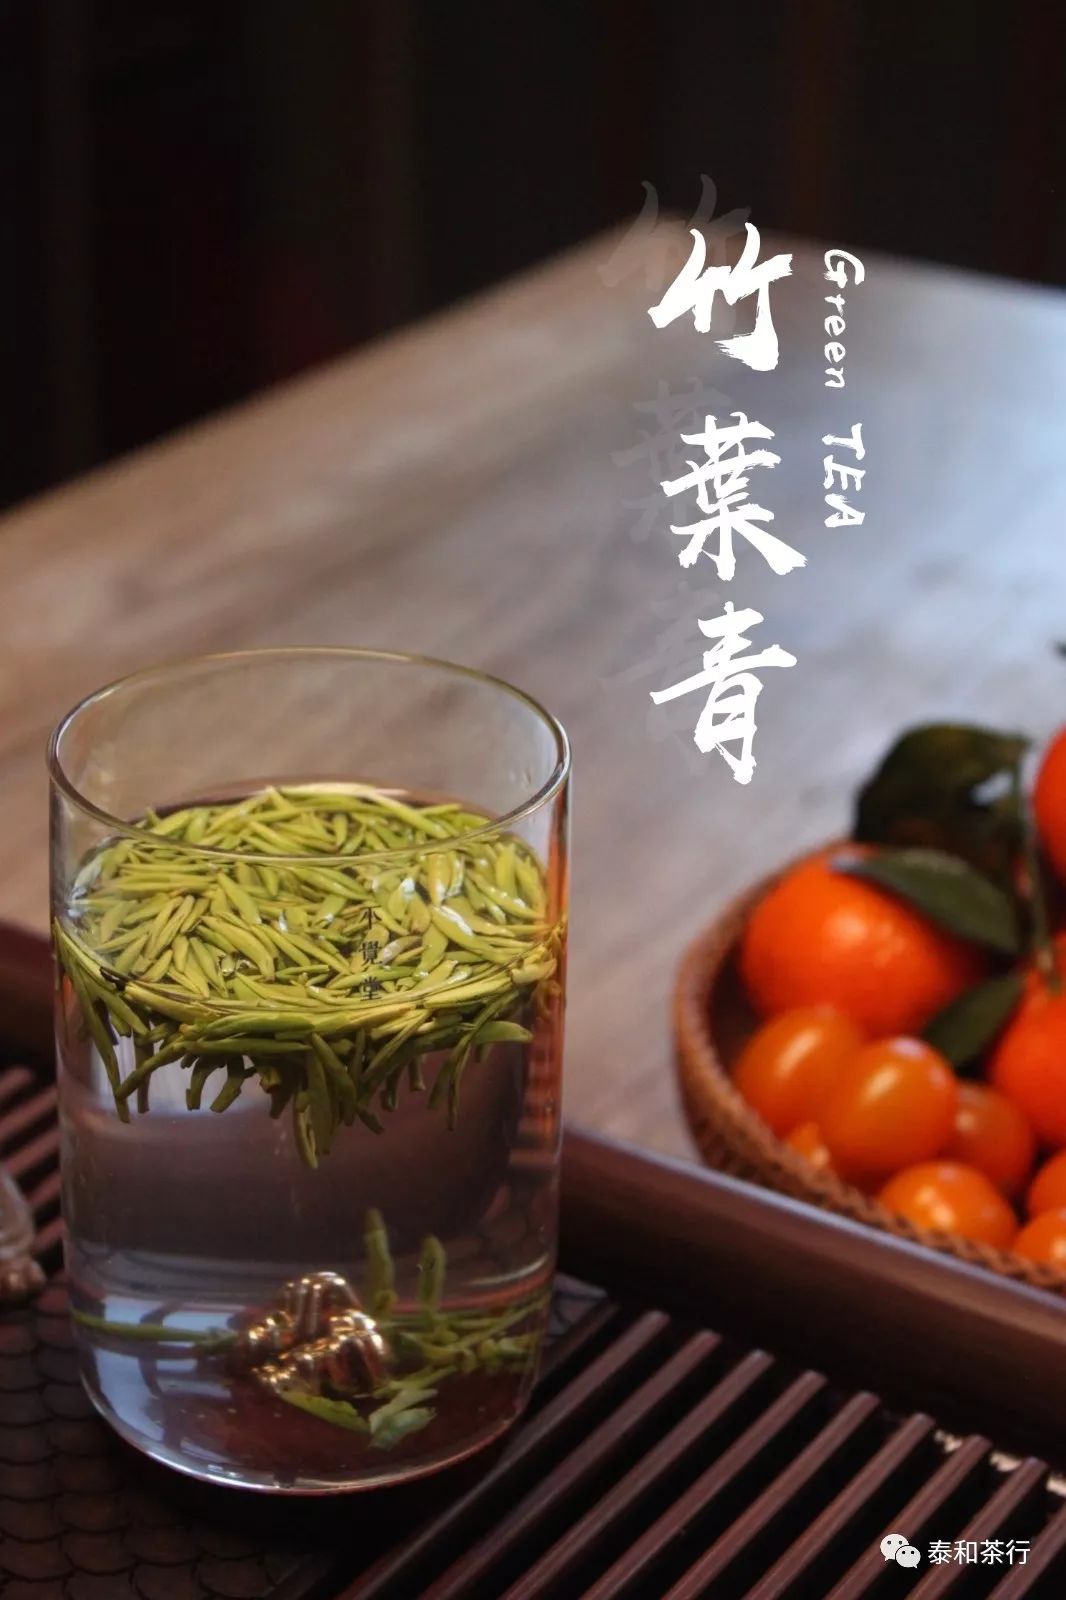 竹叶青茶在绿茶体系里有鲜明的标识